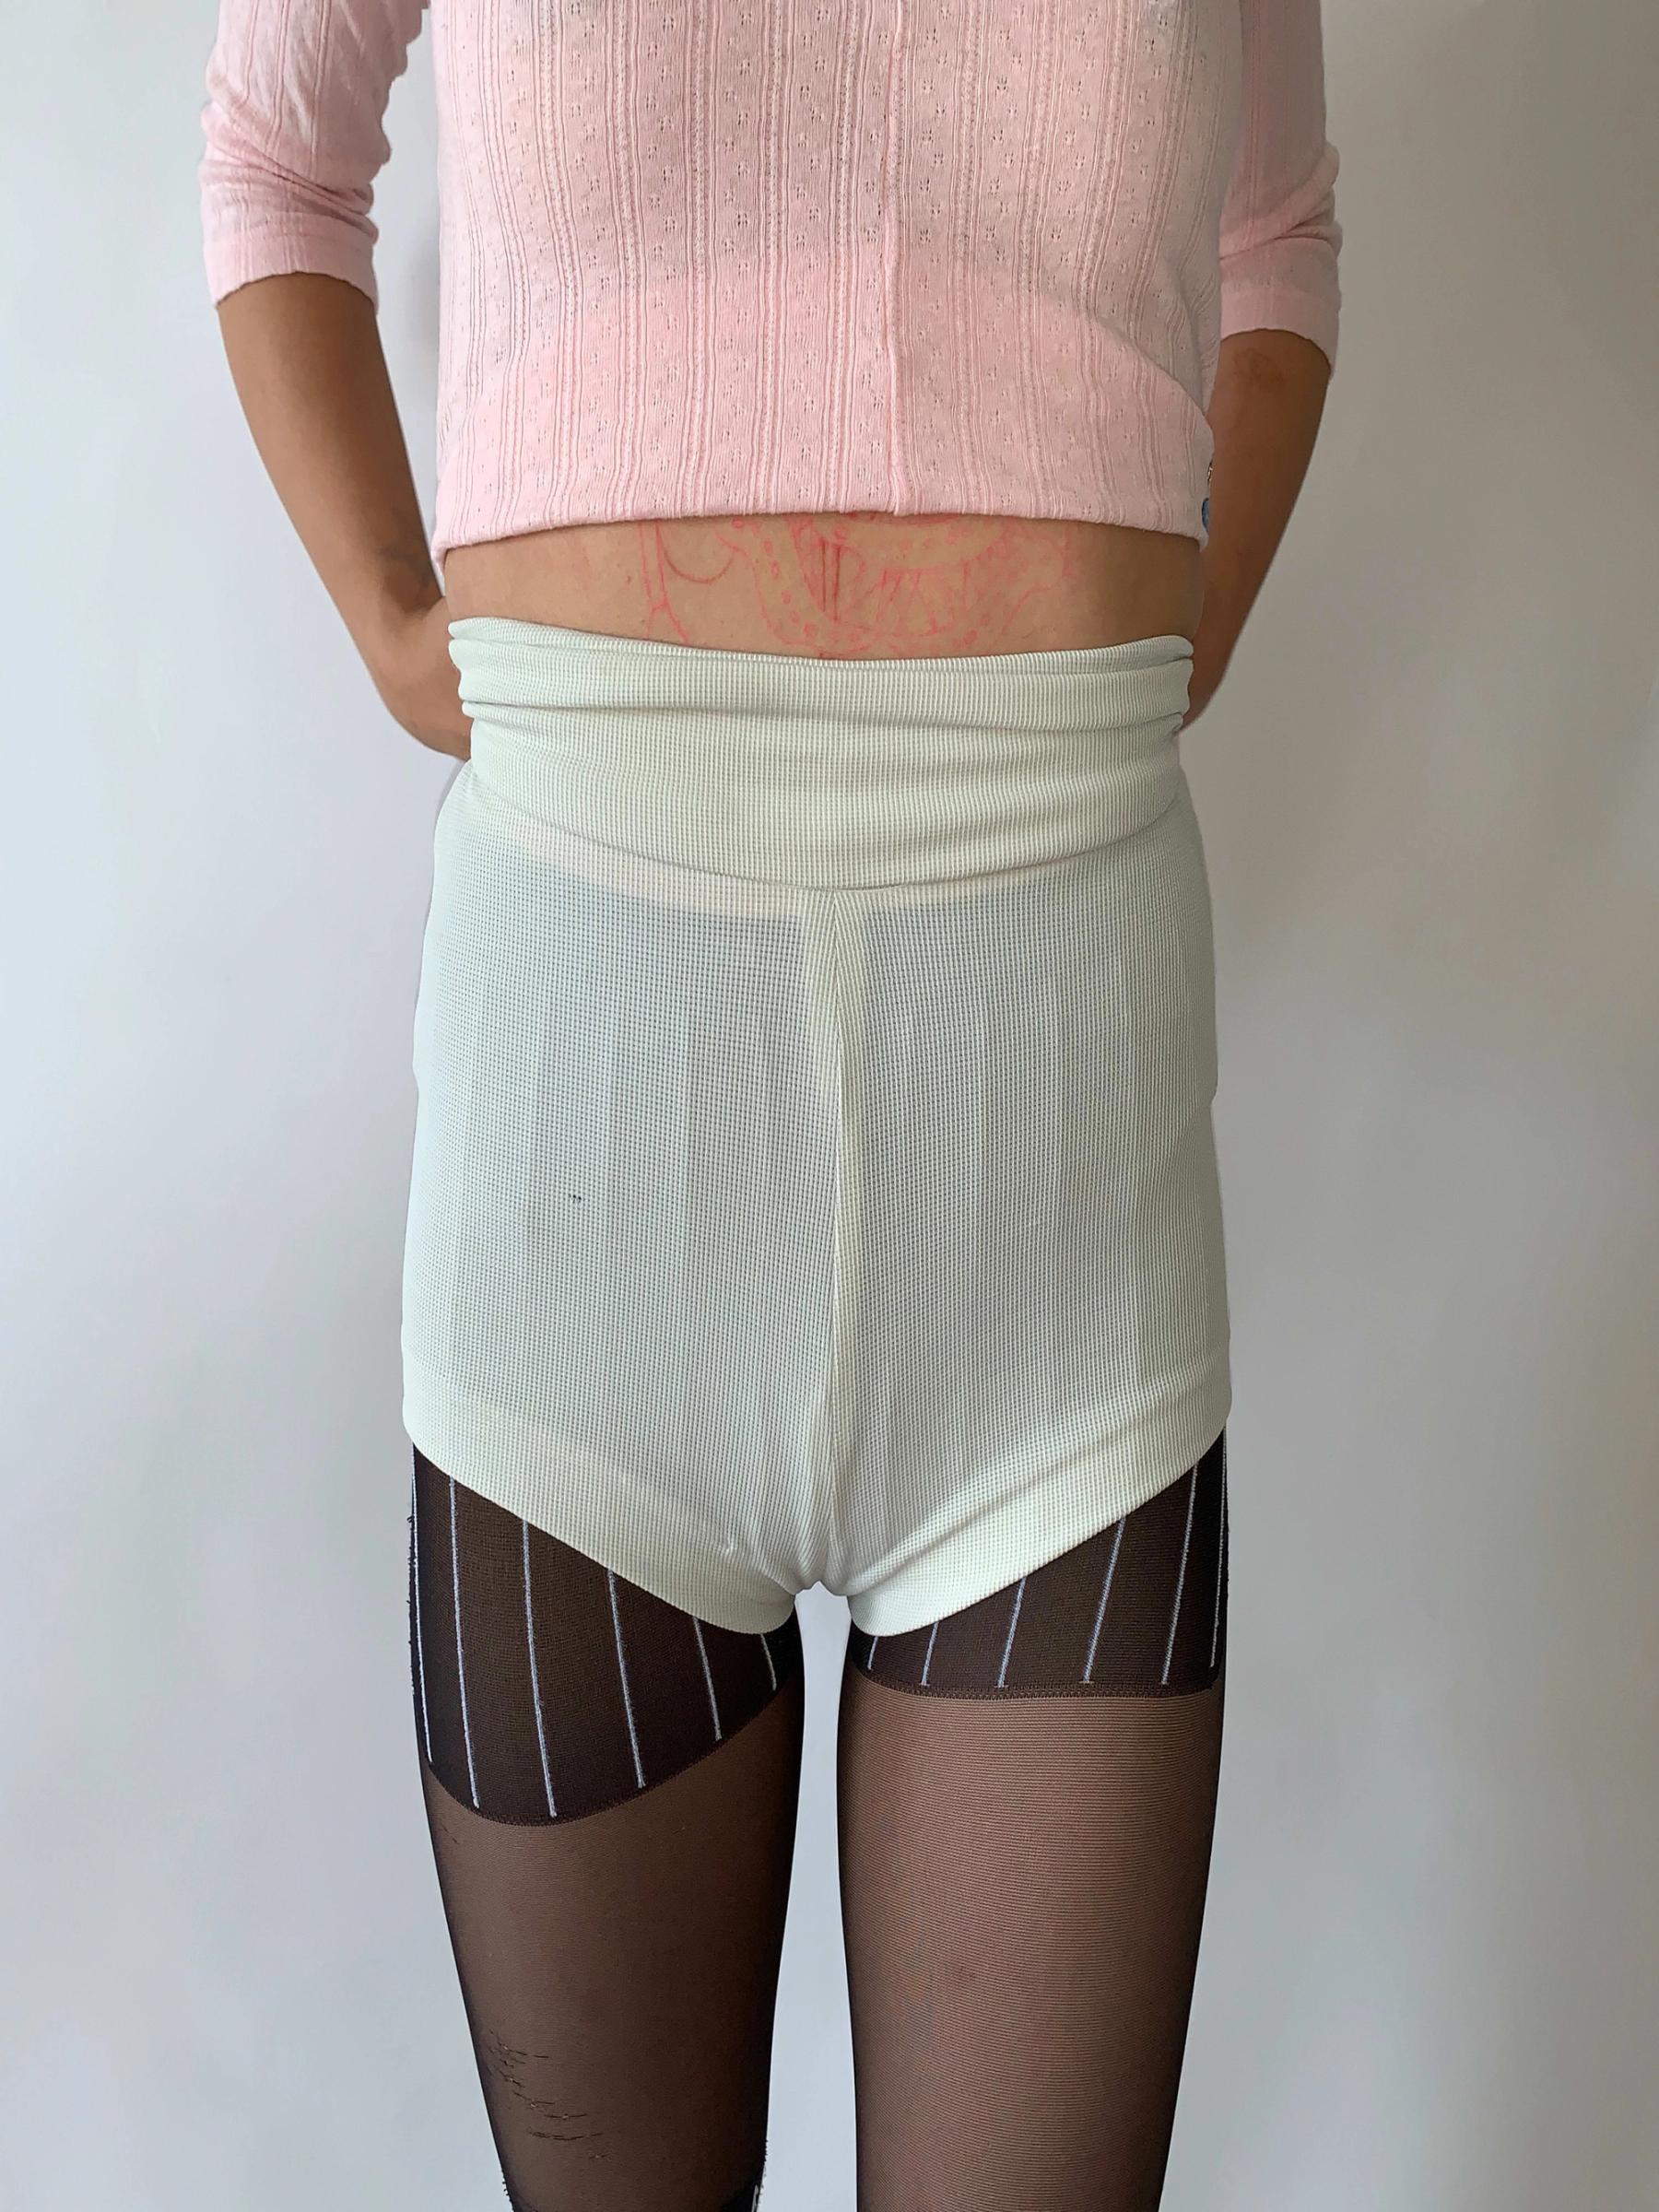 90s Vivienne Westwood Almost Underwear Shorts